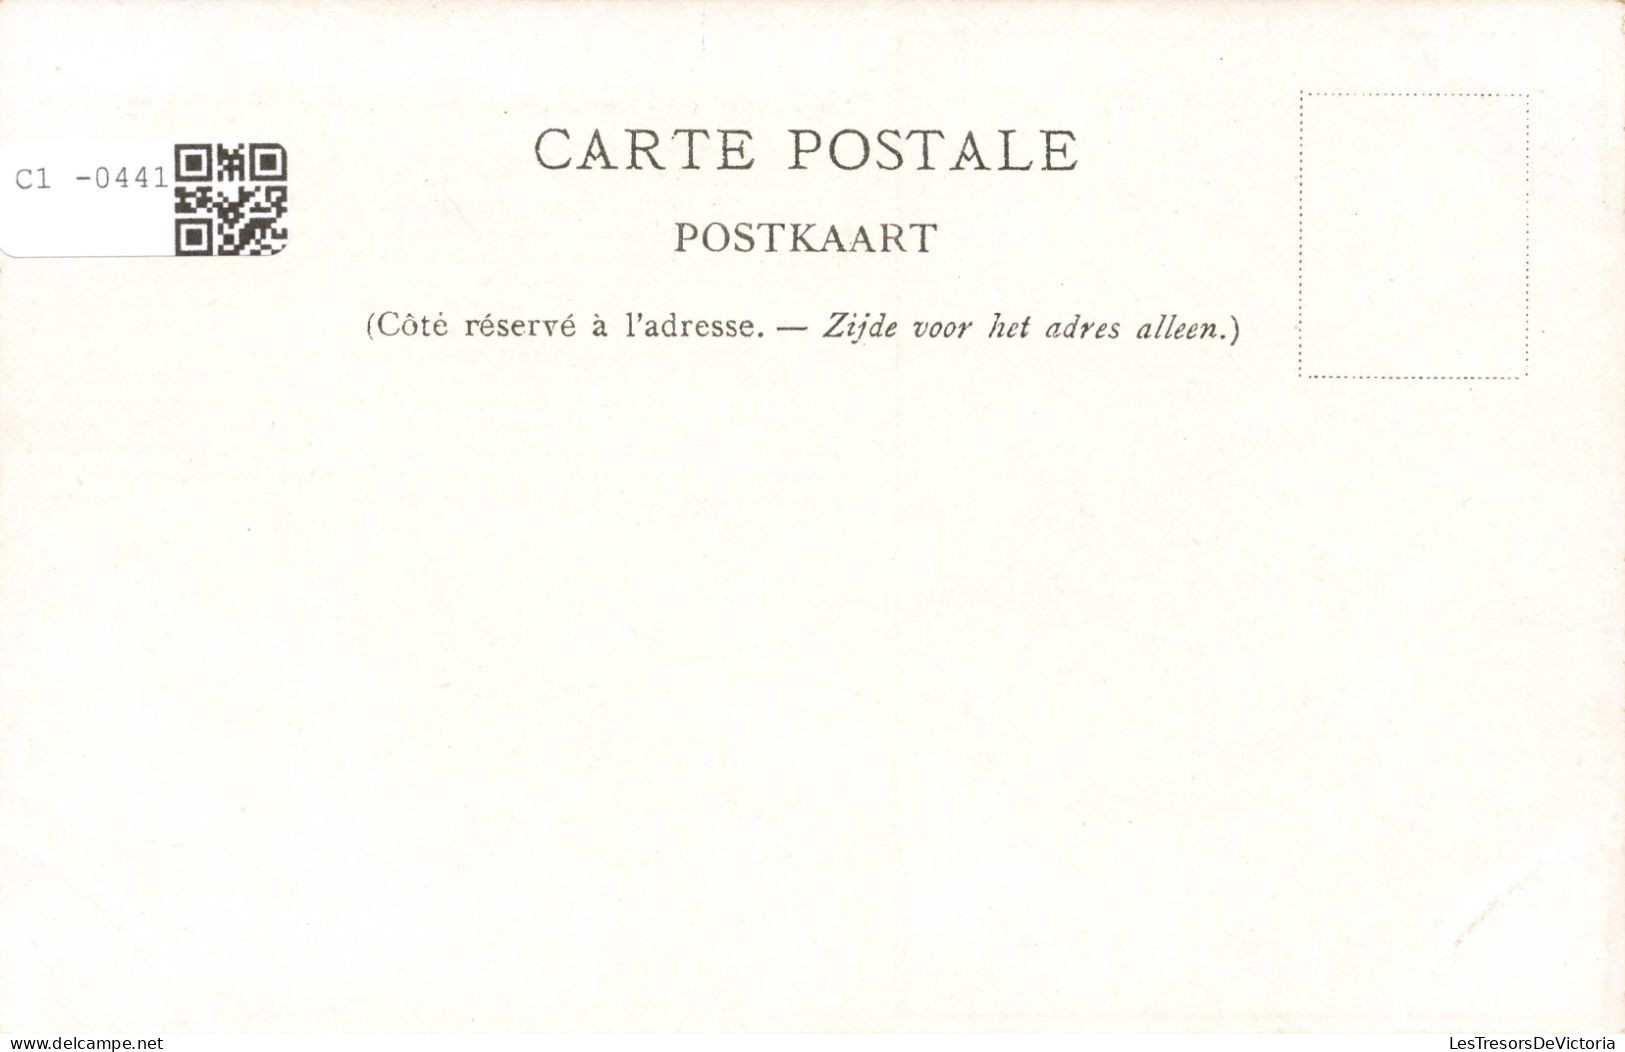 CELEBRITES - Personnages Historiques - Louis XI - Carte Postale Ancienne - Personnages Historiques